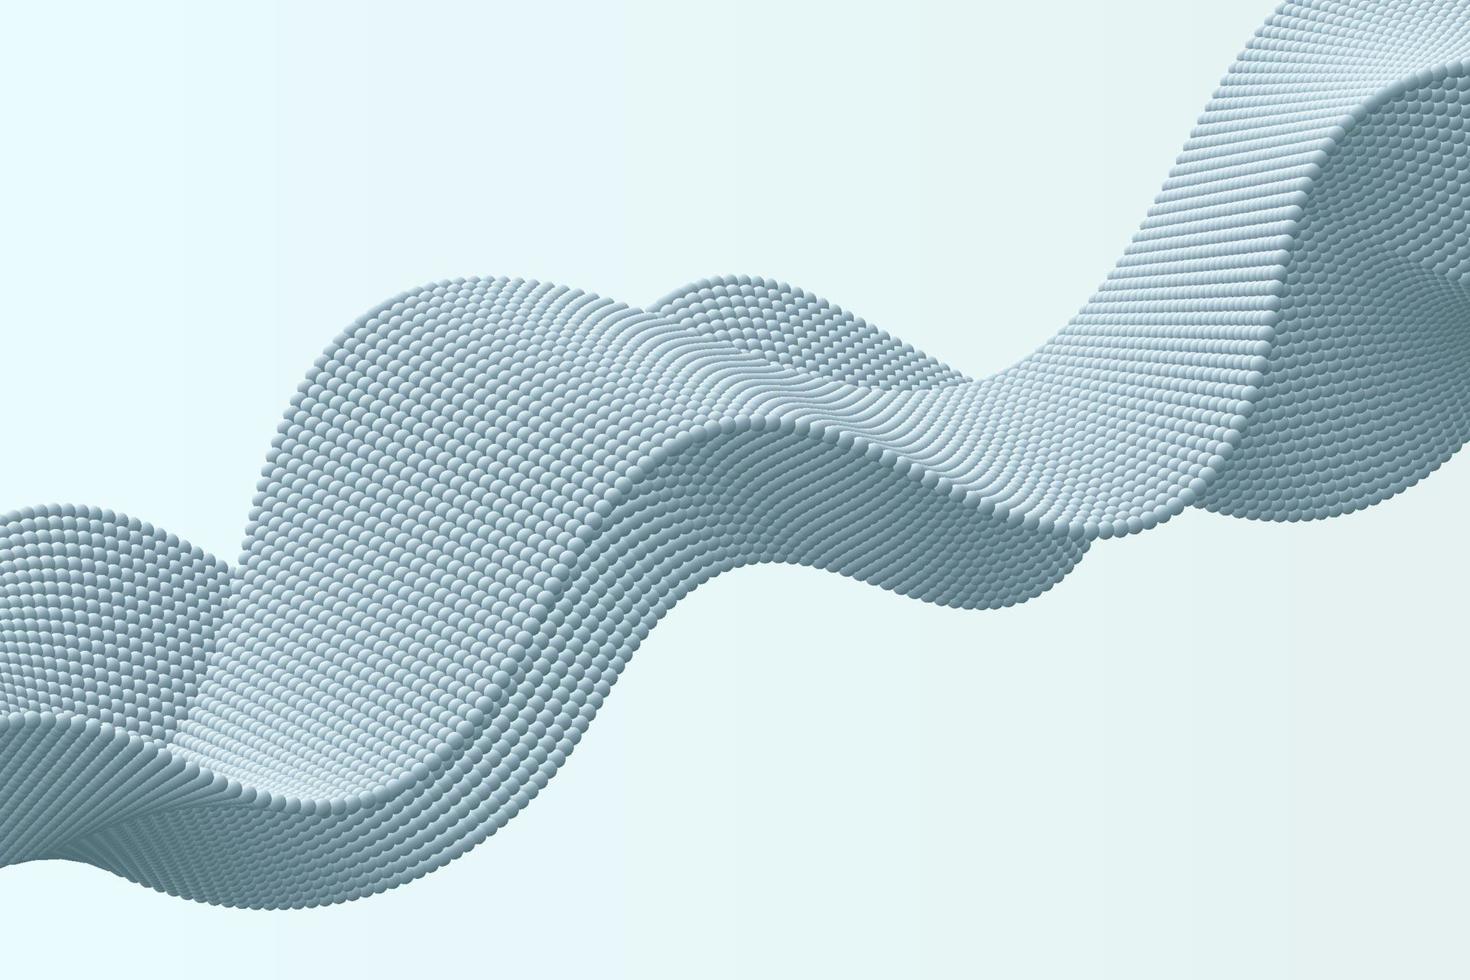 vague de volume bleu clair de fond de particules dans un style abstrait vecteur